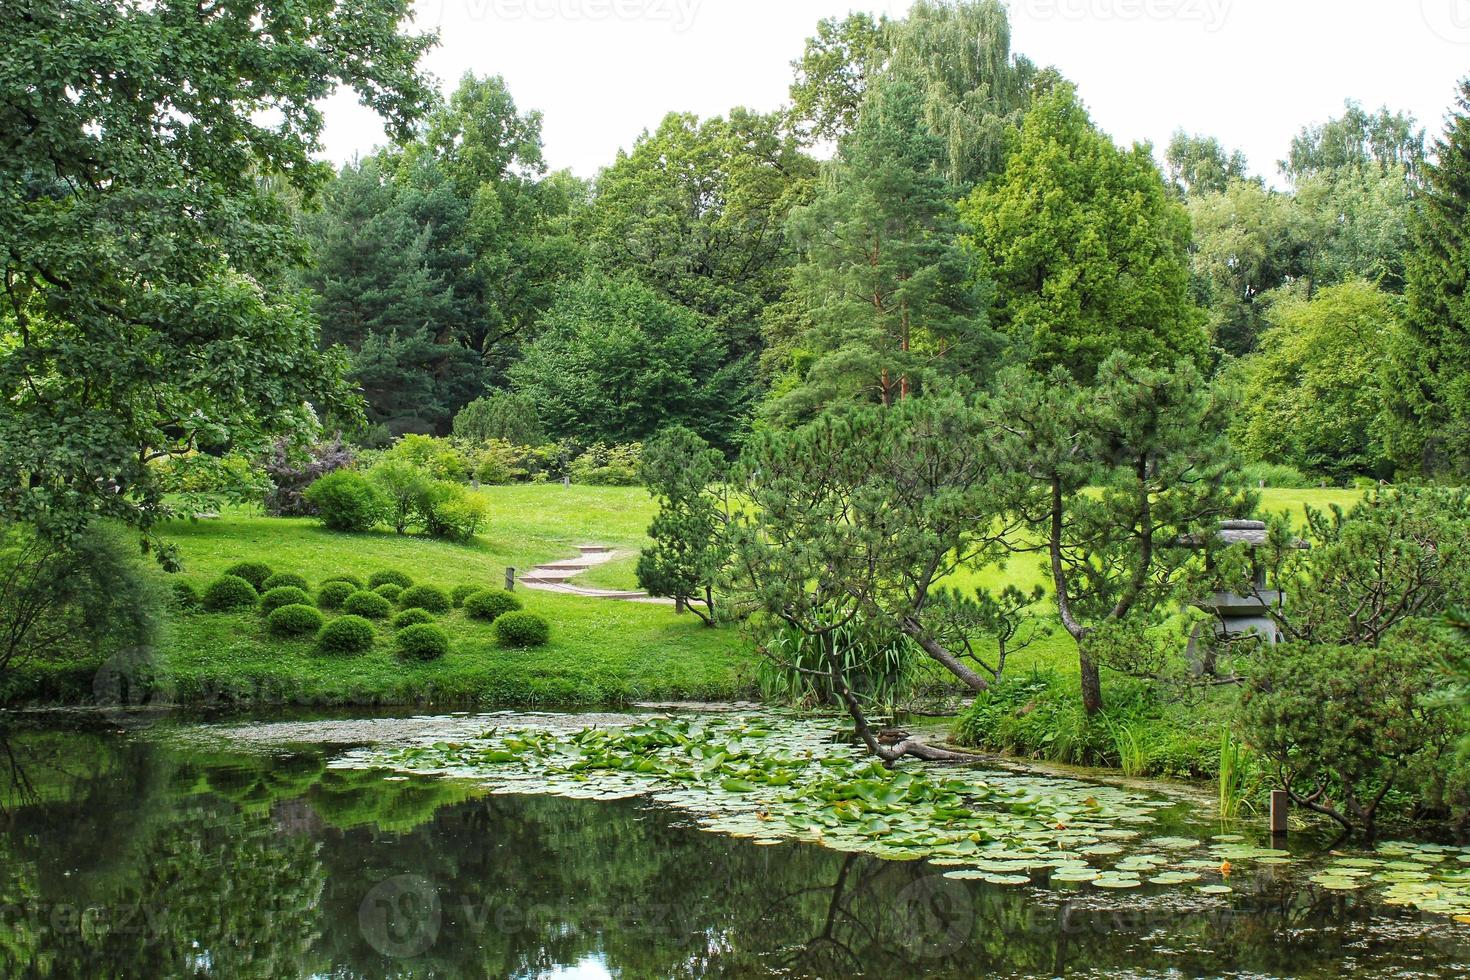 belle vue sur le paysage dans le jardin décoratif botanique traditionnel japonais. scène de nature calme de l'eau de l'étang du lac d'été vert et de la lanterne de la pagode. zen, méditation, concept d'harmonie photo